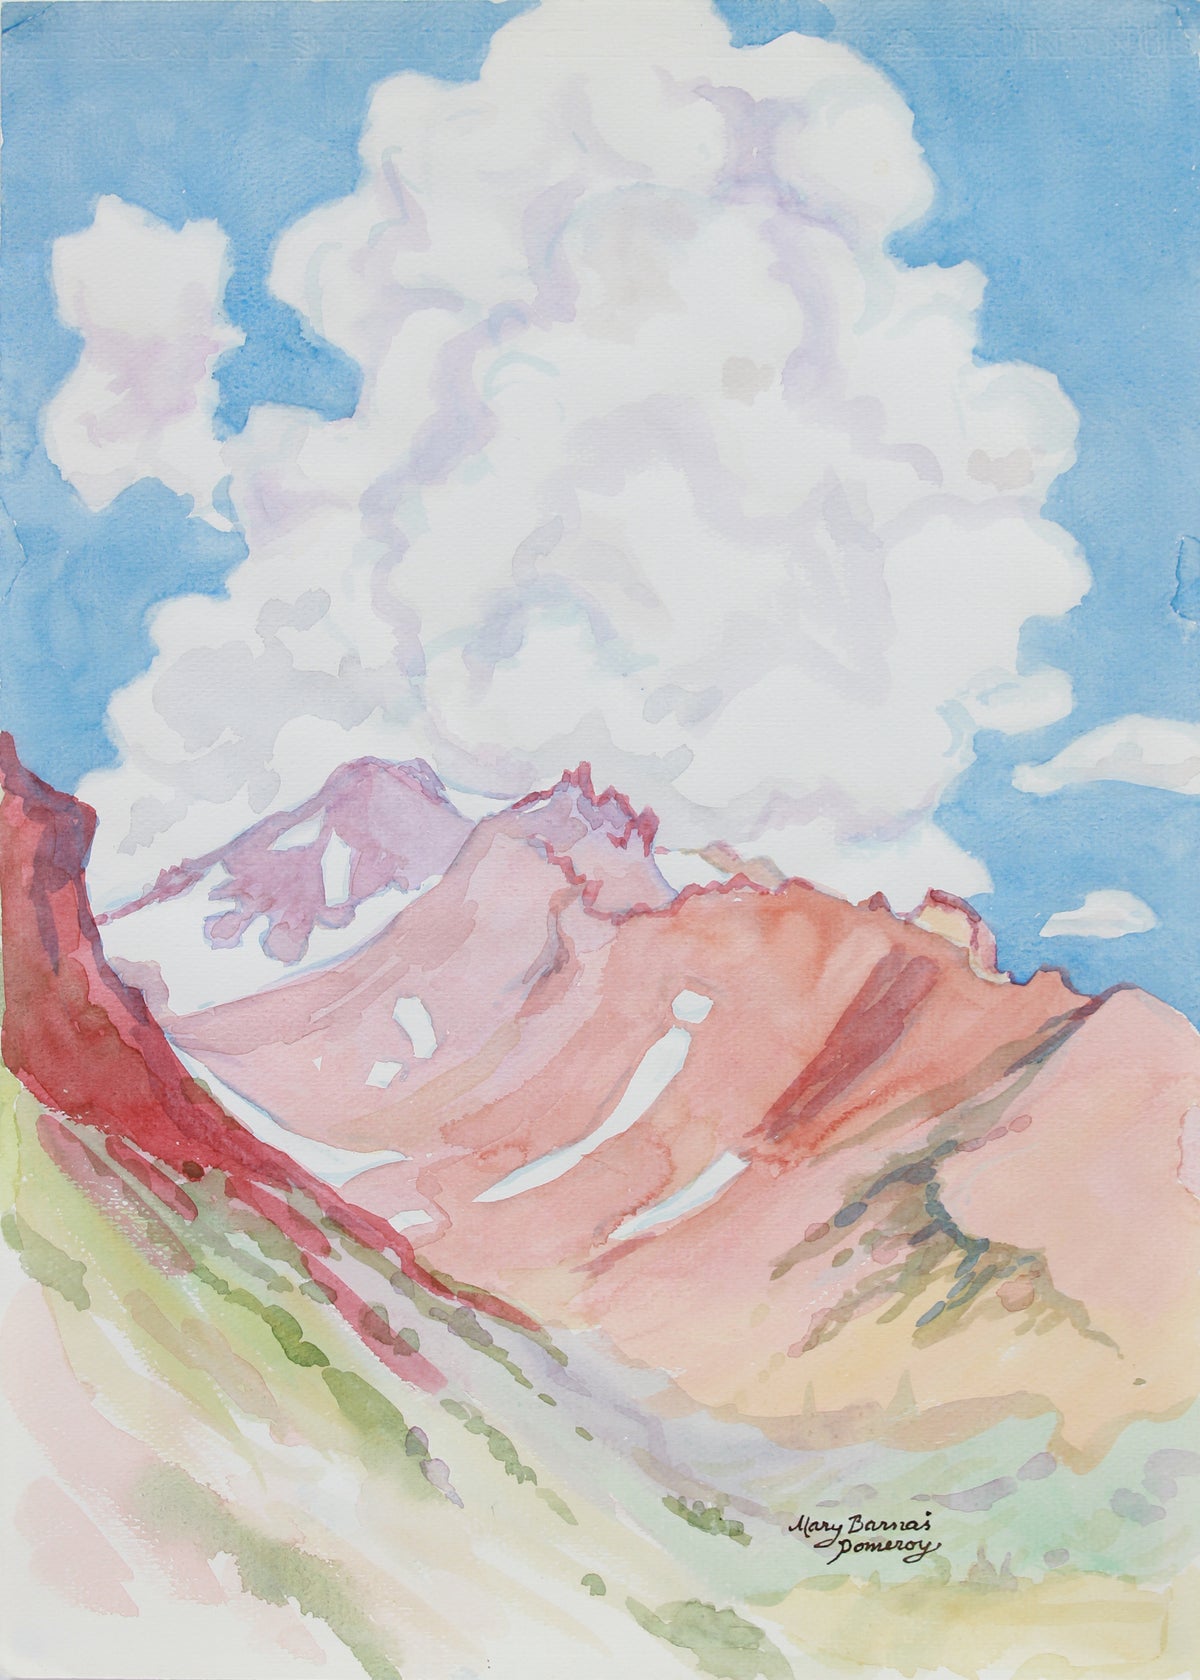 &lt;i&gt;Mount Shasta from above Panthen Meadows&lt;/i&gt; &lt;br&gt; October 1999 Watercolor &lt;br&gt;&lt;br&gt;B0536